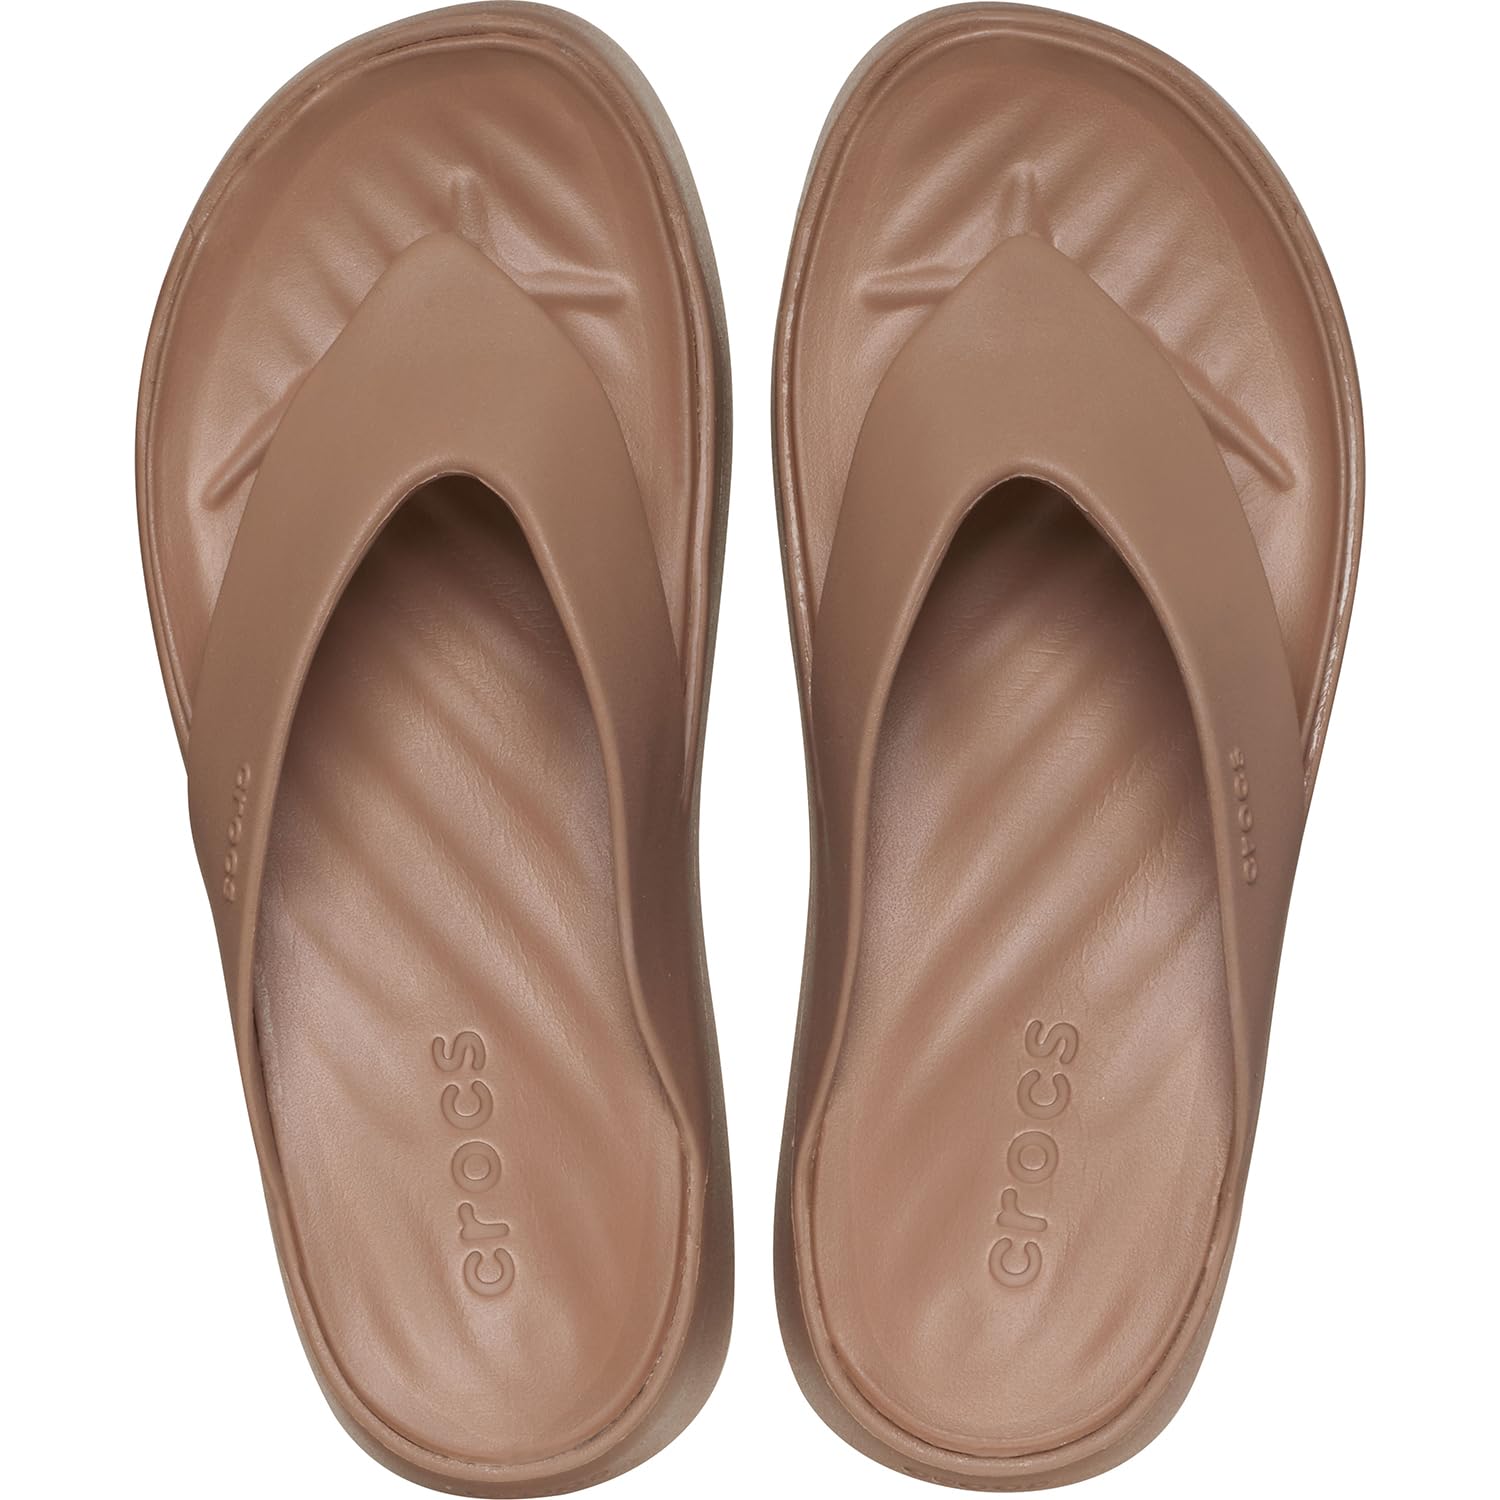 Crocs Women's Getaway Platform Flip Flops, Wedge Sandals